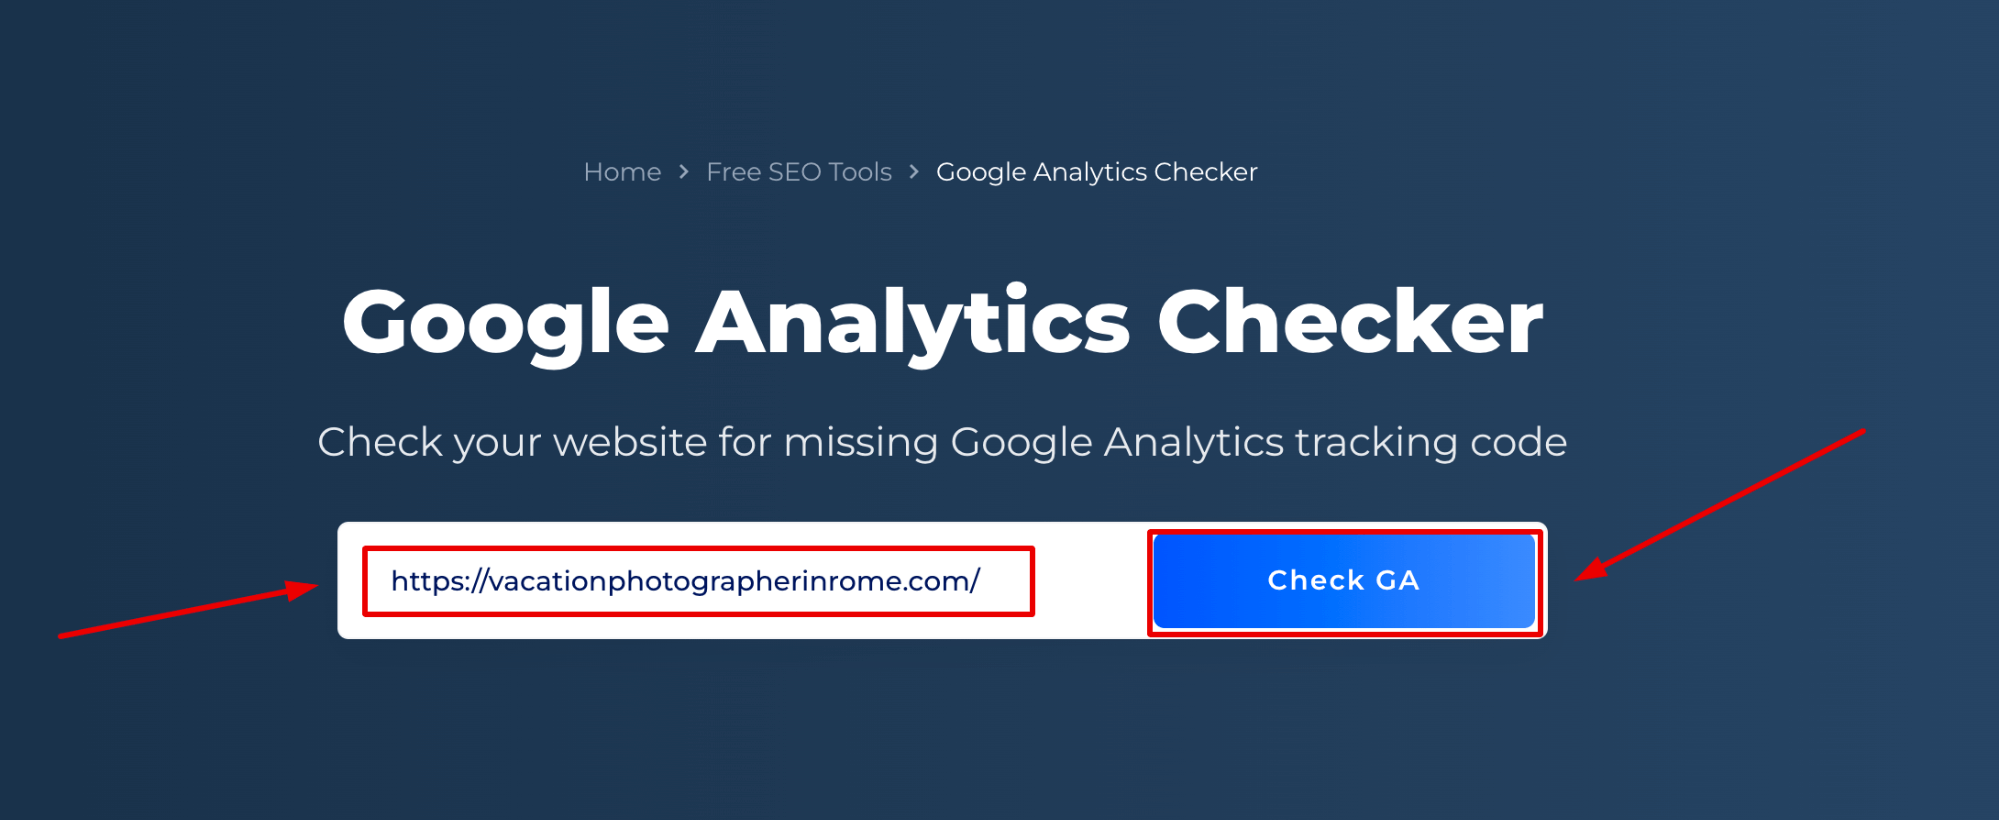 Google Analytics Checker